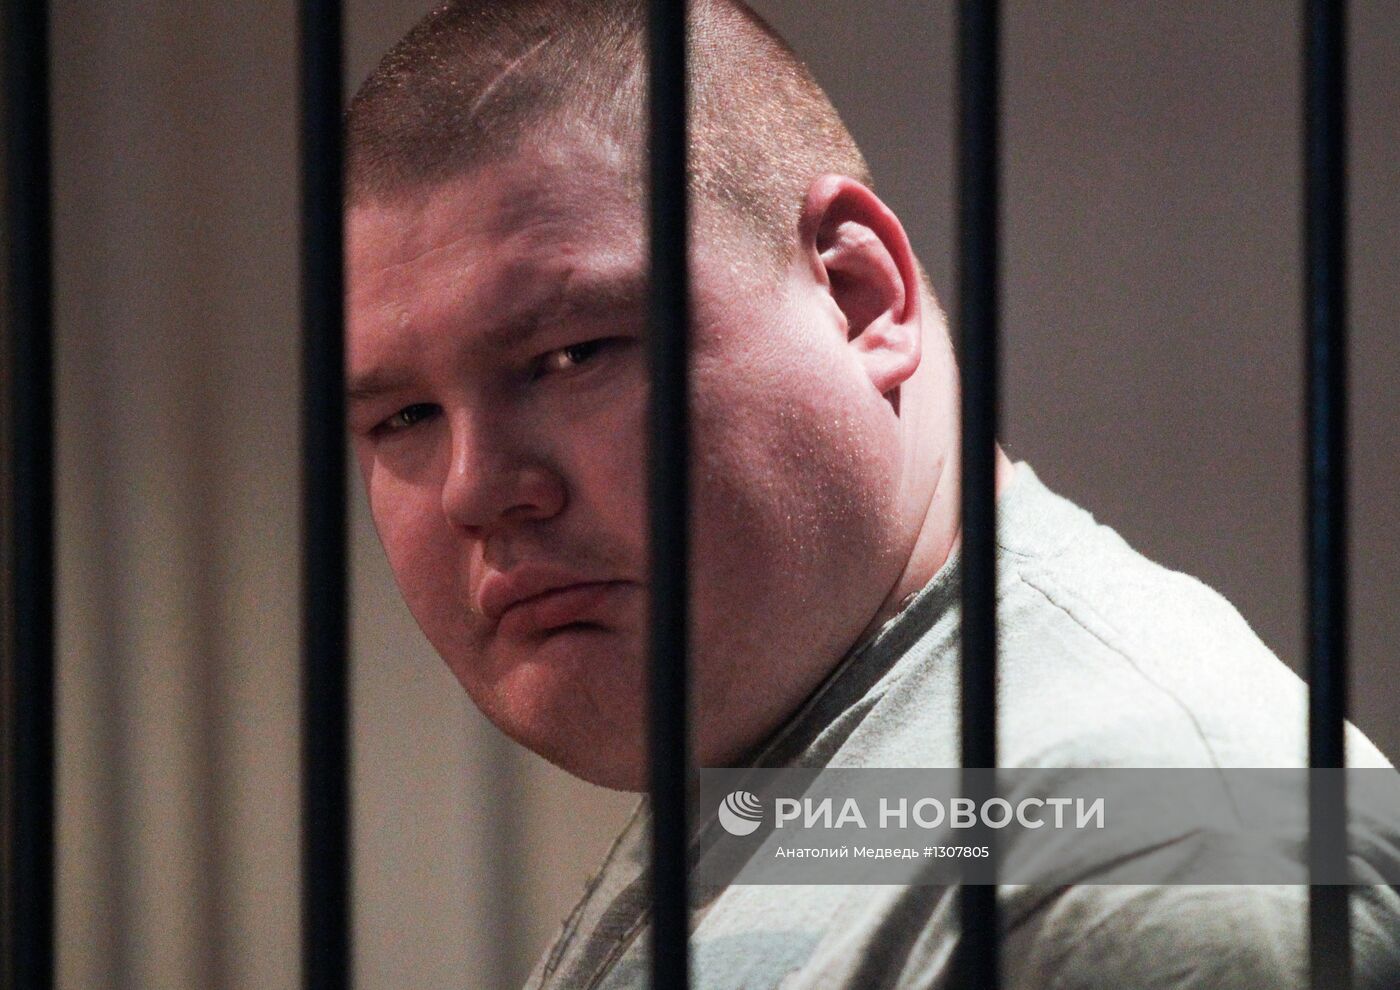 Оглашение приговора Вячеславу Дацику